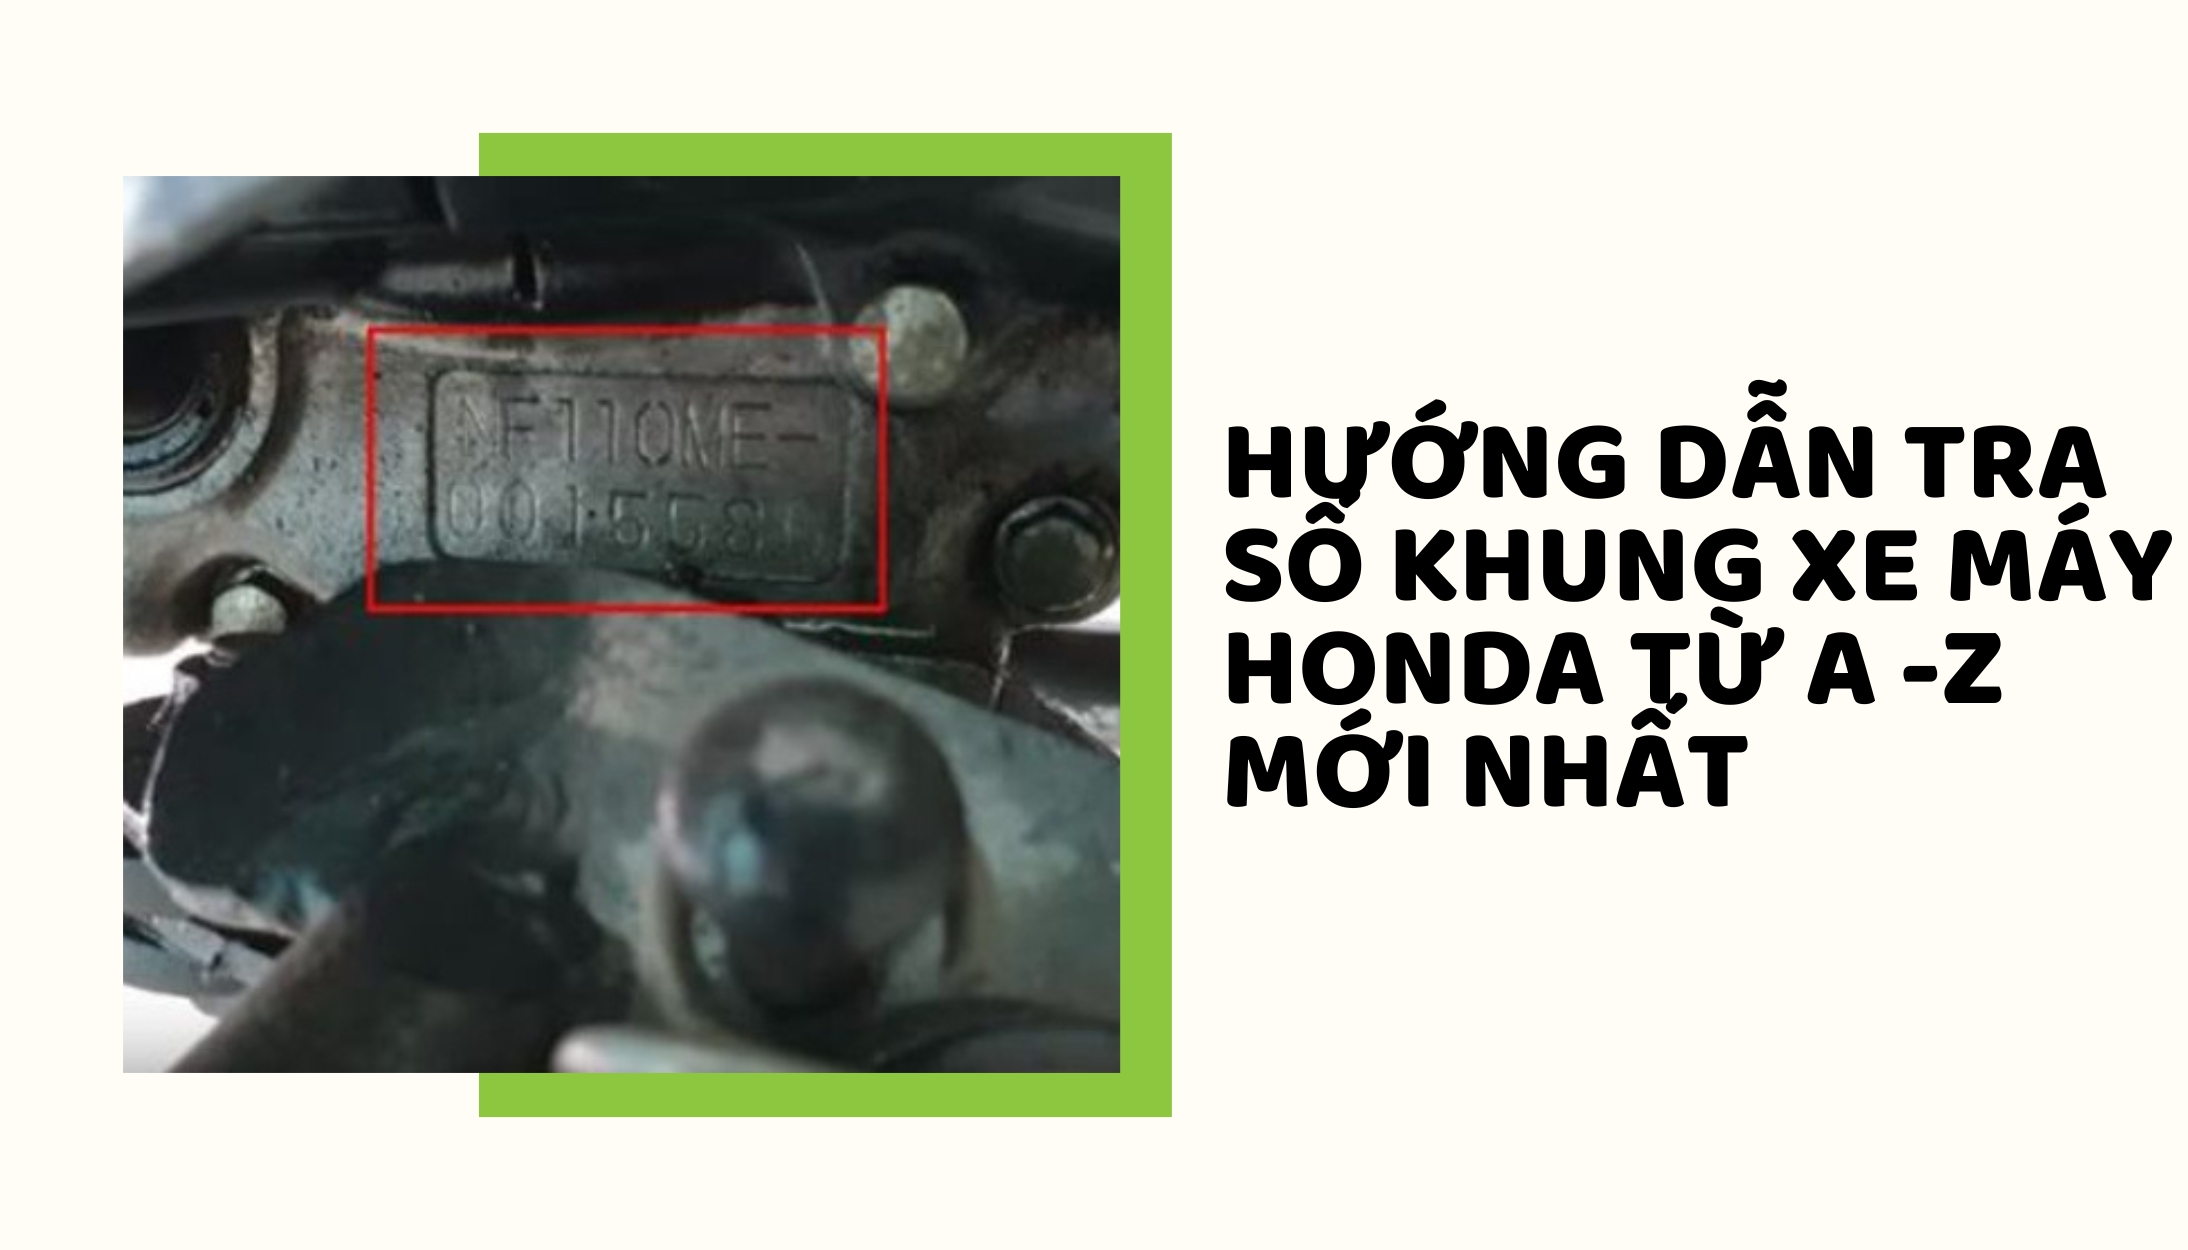 299.vn - Tài liệu hướng dẫn sửa chữa dòng xe Honda Super... | Facebook